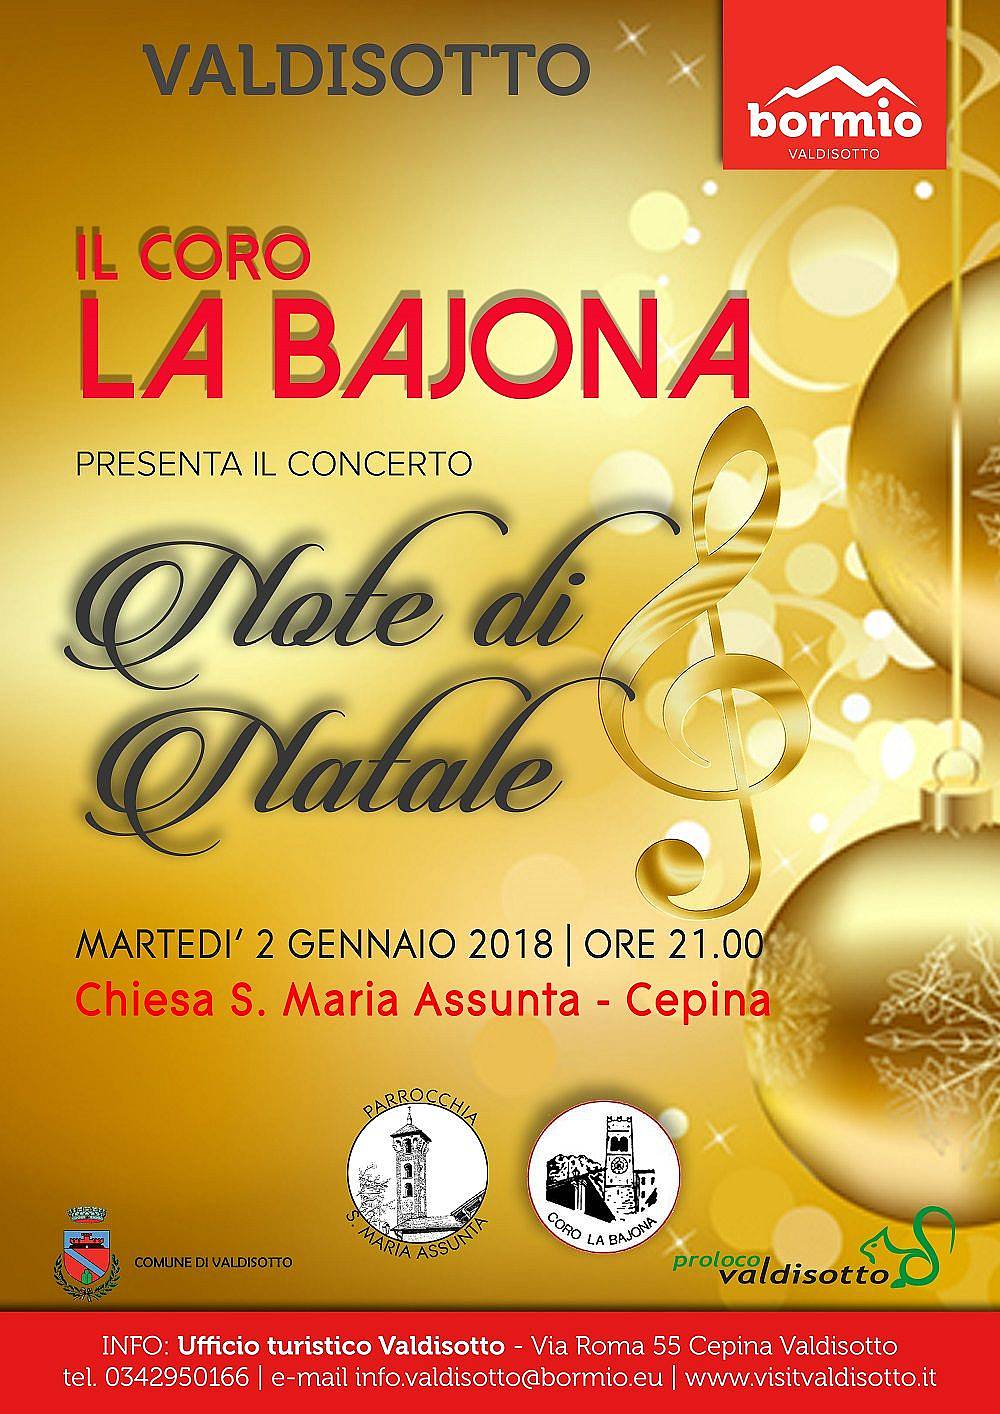 Il Coro LA BAJONA presenta il concerto NOTE DI NATALE